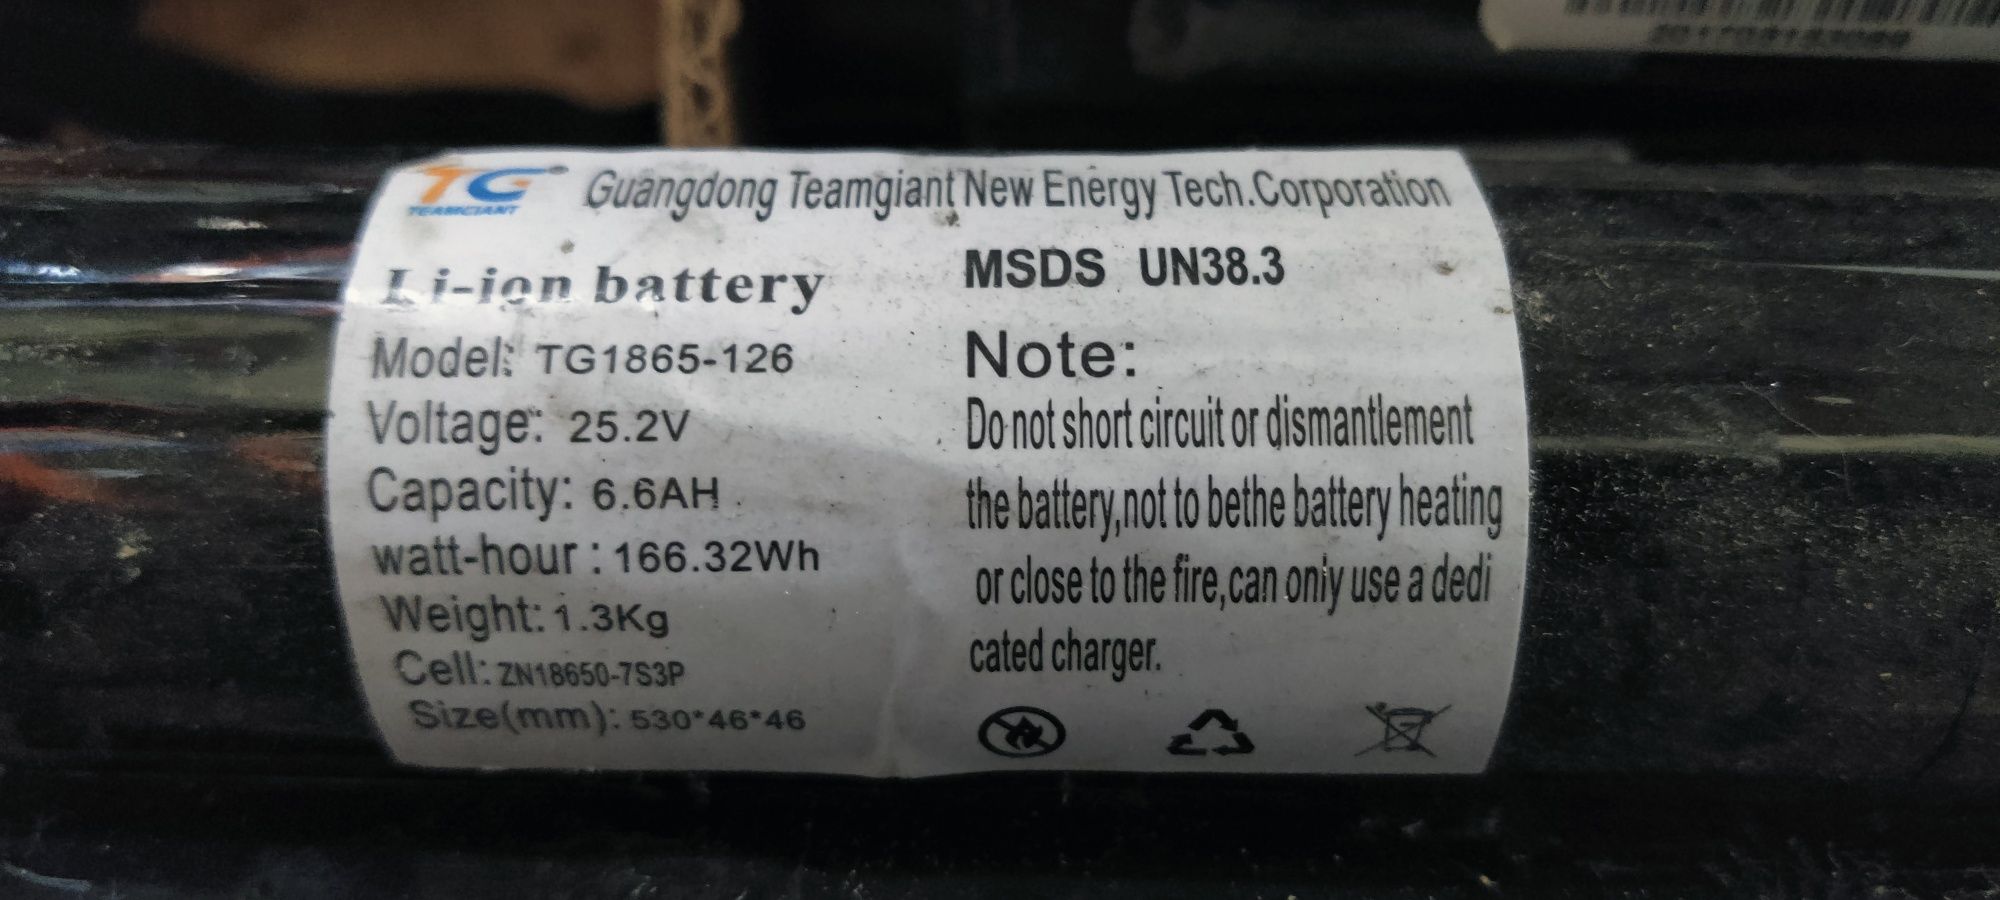 Під відновлення Акумулятори/ батареї  в Електросамокат є опт